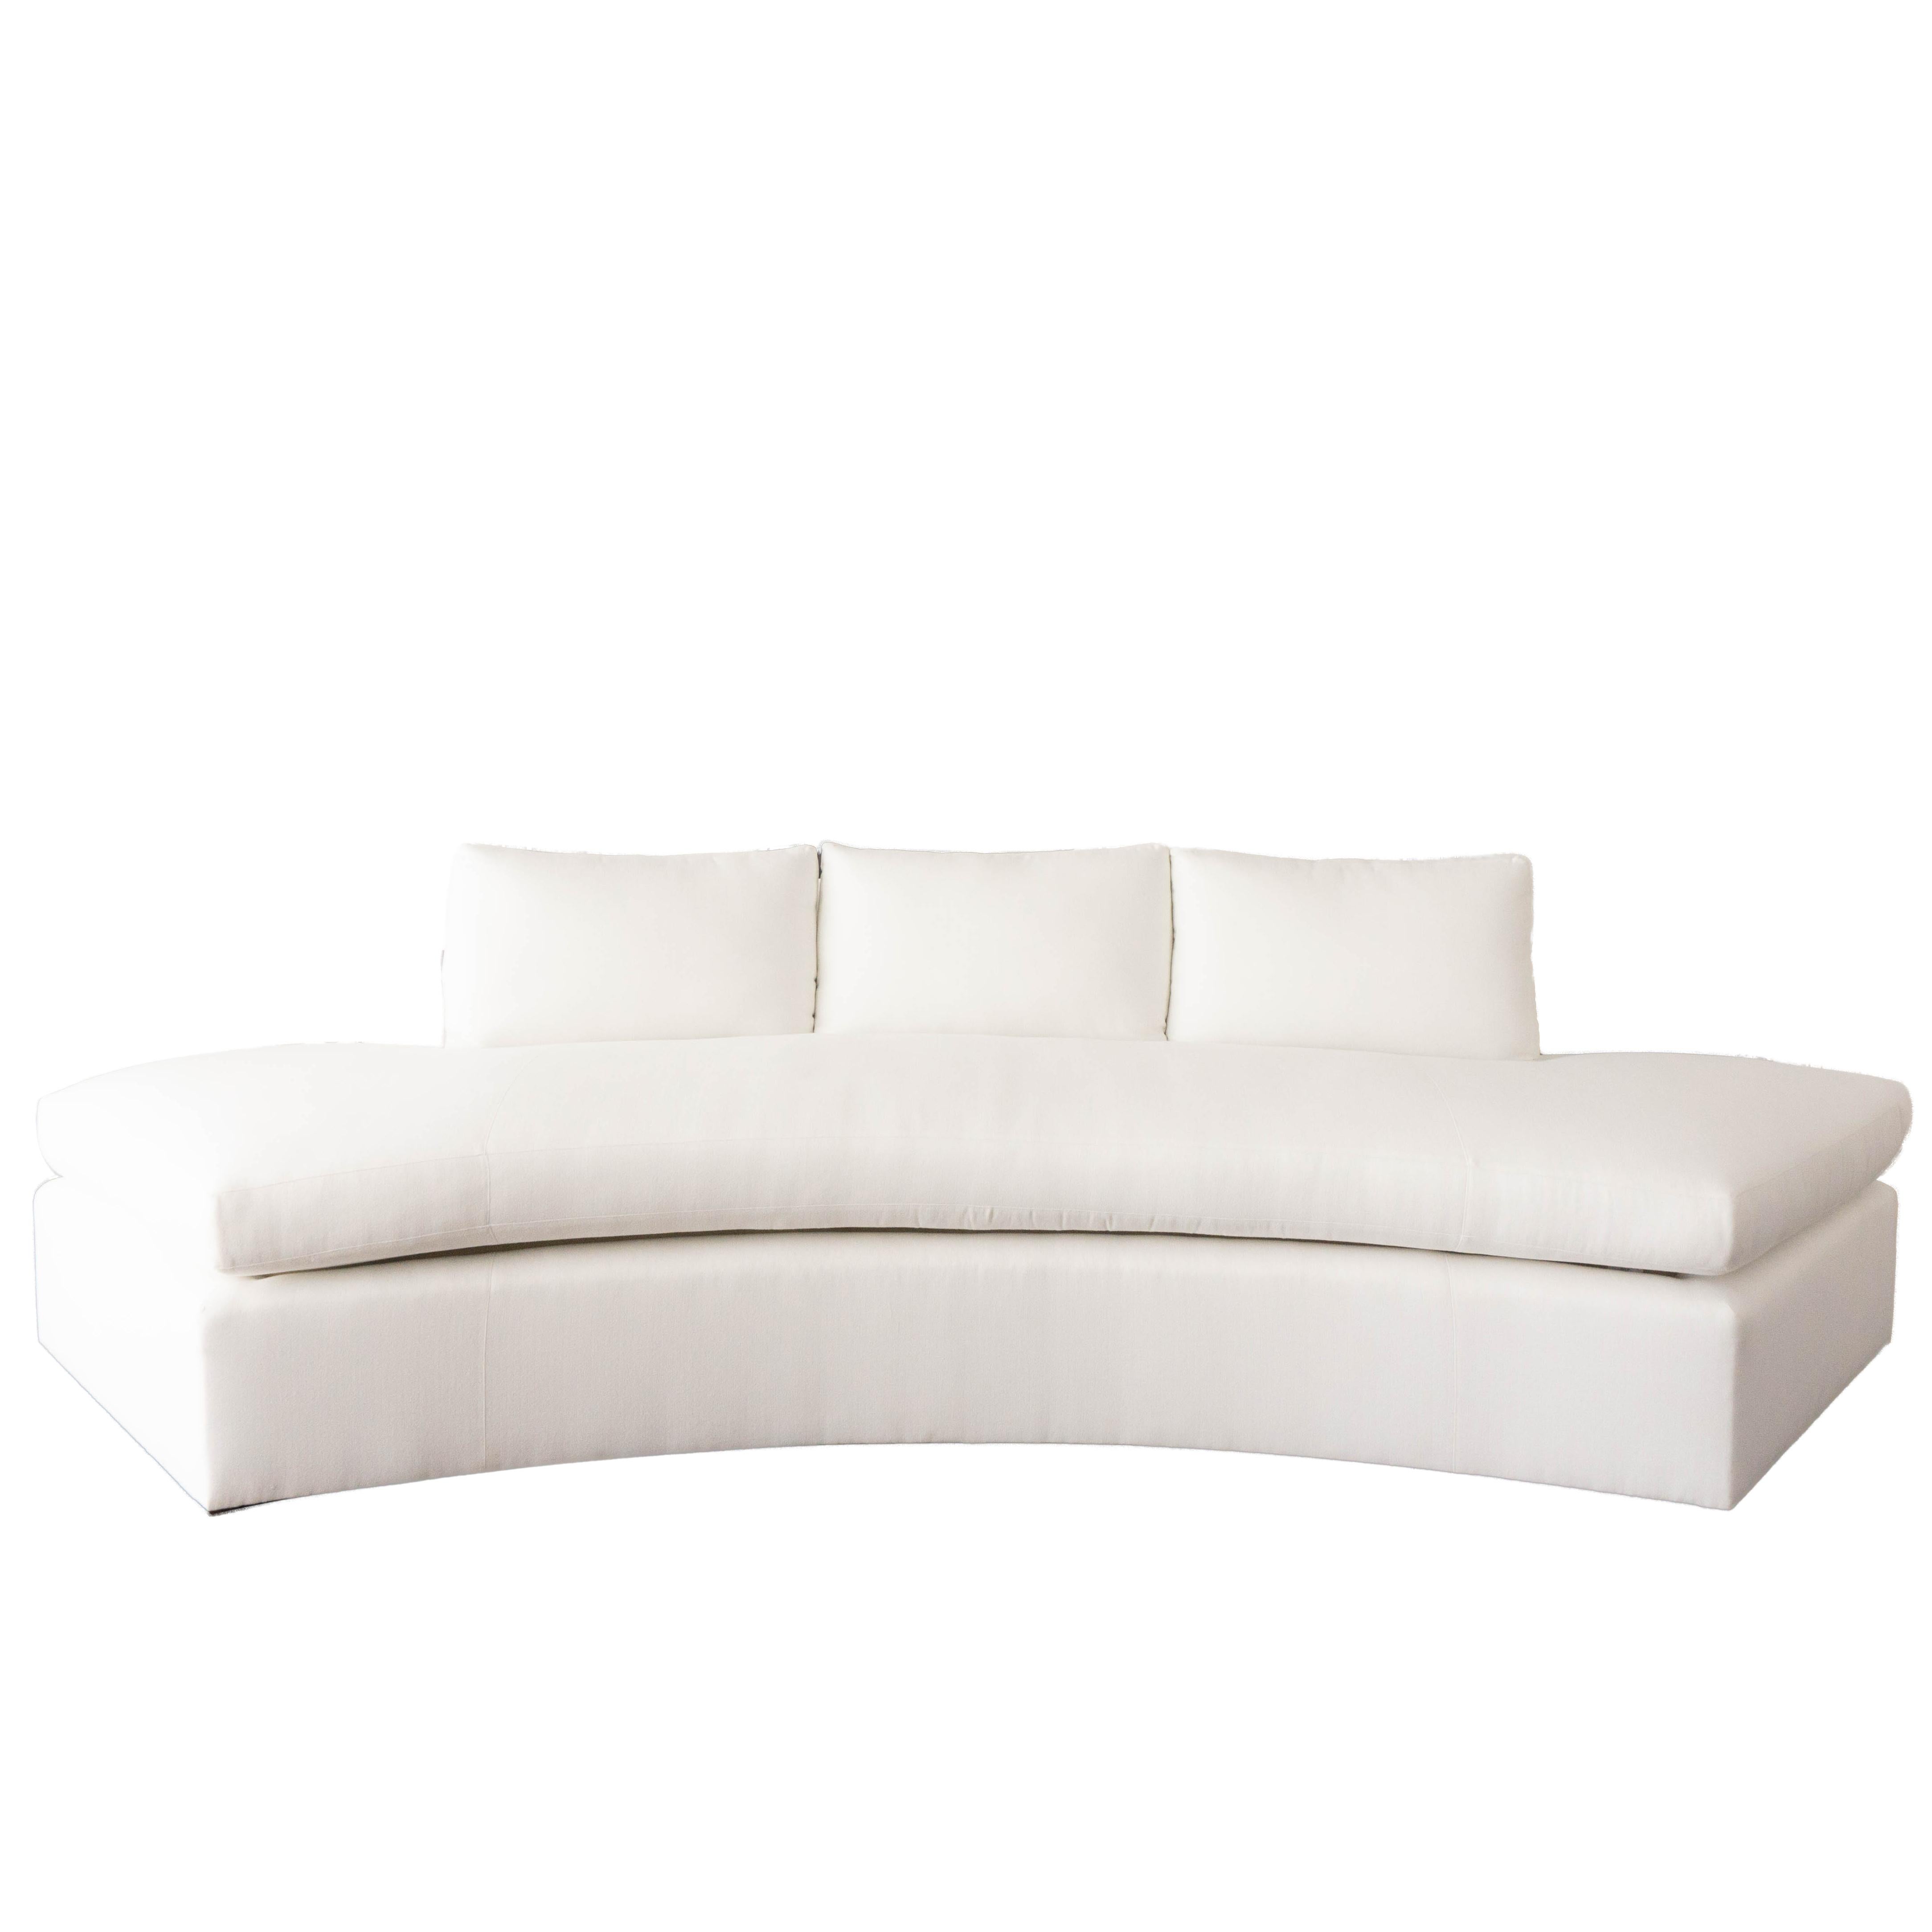 Dieses moderne, geschwungene Sofa wird auf Bestellung gefertigt und verfügt über 3 lose Rückenkissen mit einem einzelnen gepolsterten Sitz. Dieses Stück ist individuell anpassbar und kann nach den Größenangaben Ihrer Wünsche gebaut werden. 

COM